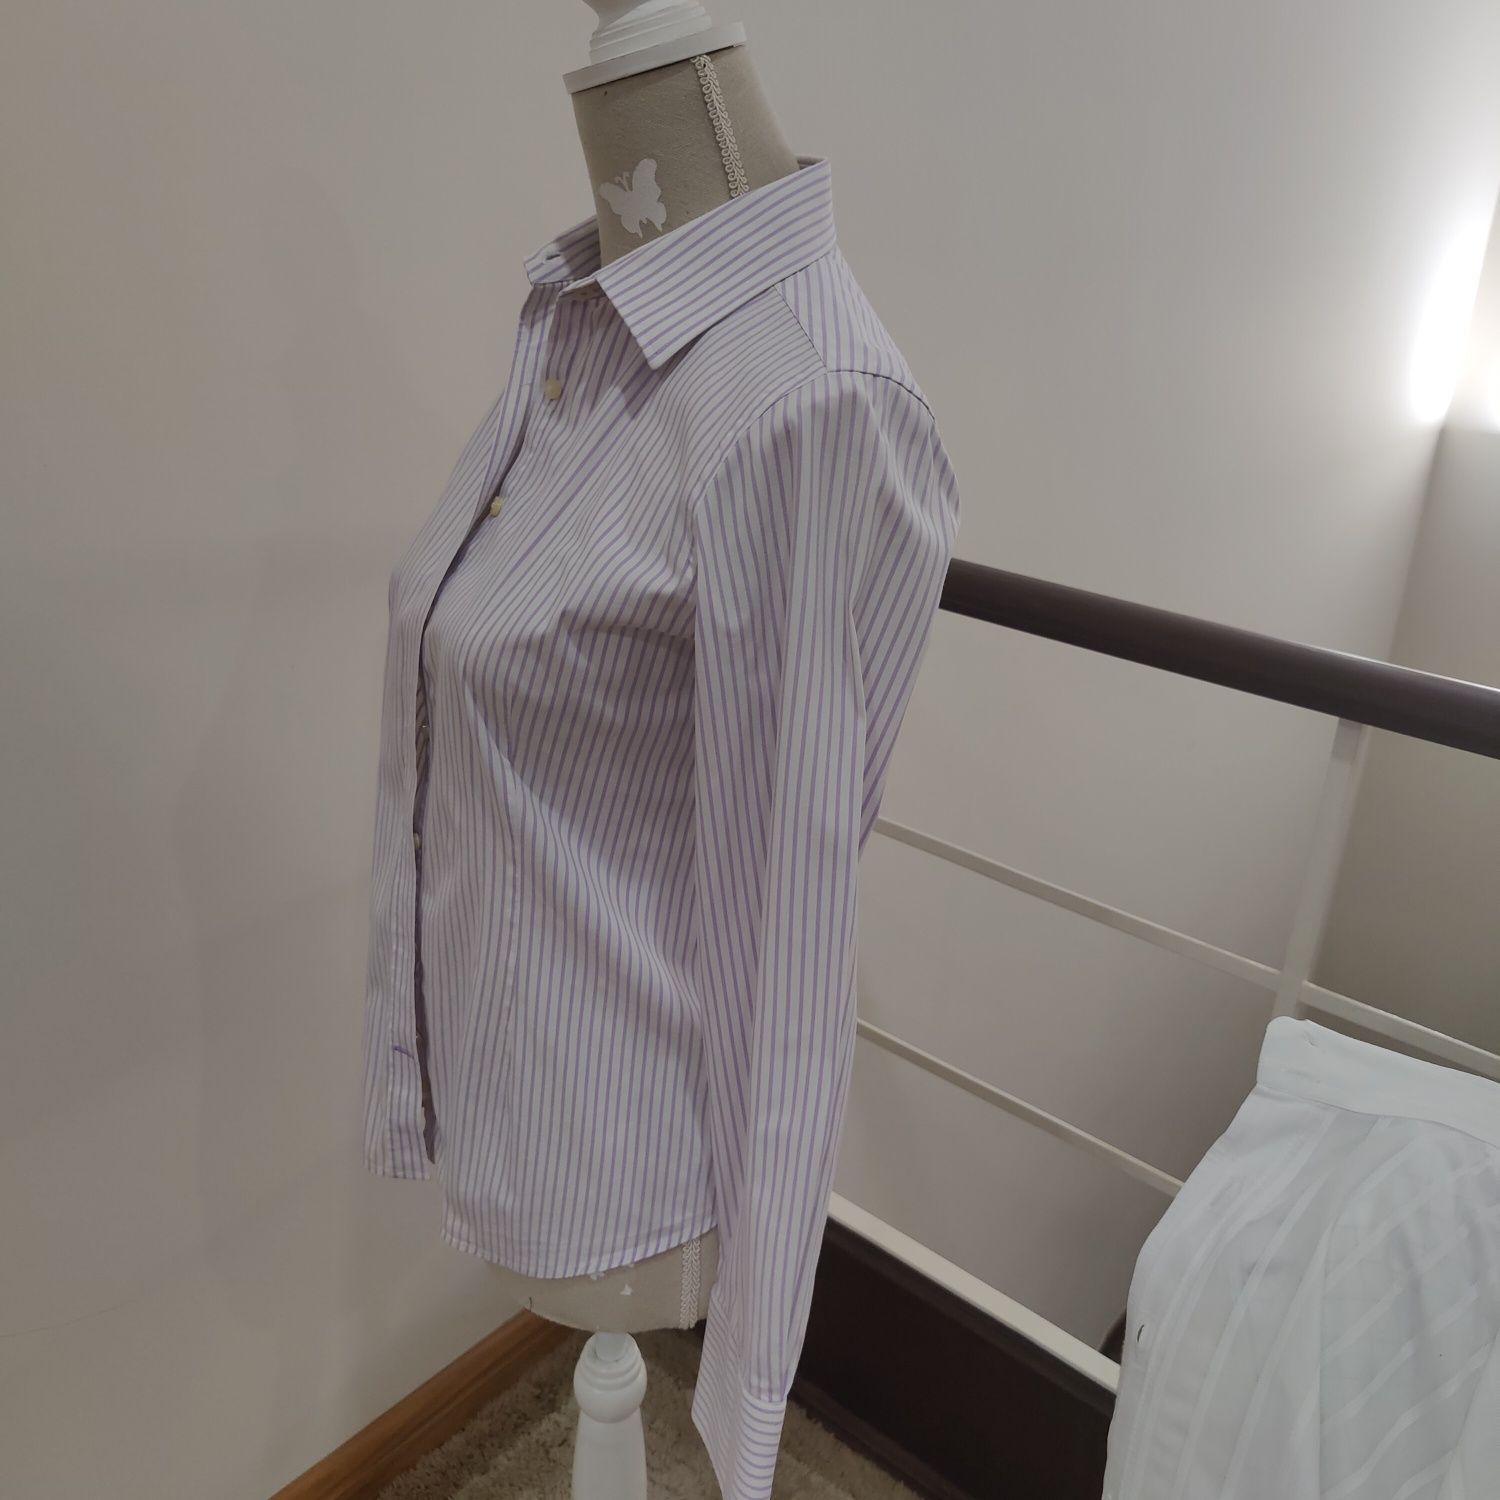 Camisa Sacoor - 38 - Risca Branca e rosa - excelente estado